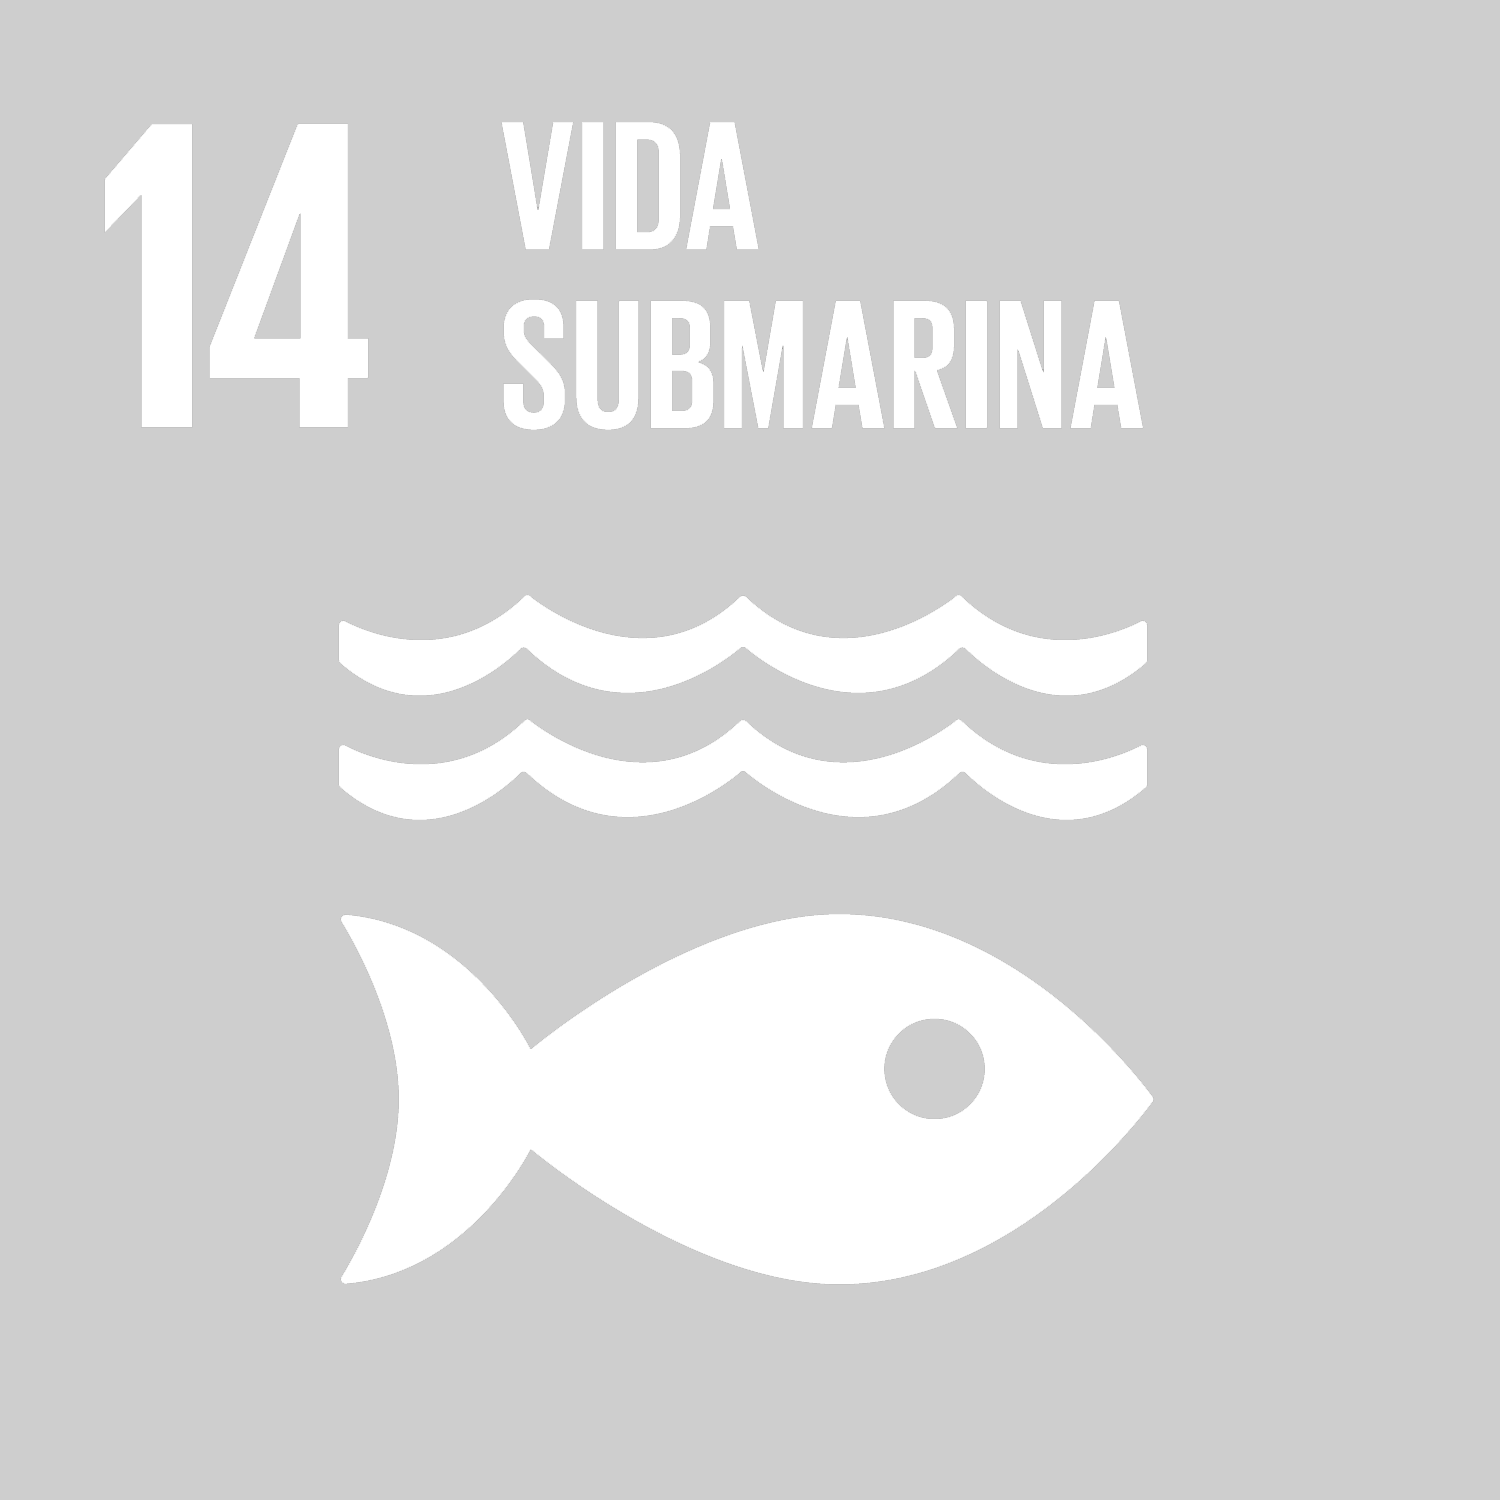 Objetivo 14: Conservar y utilizar en forma sostenible los océanos, los mares y los recursos marinos